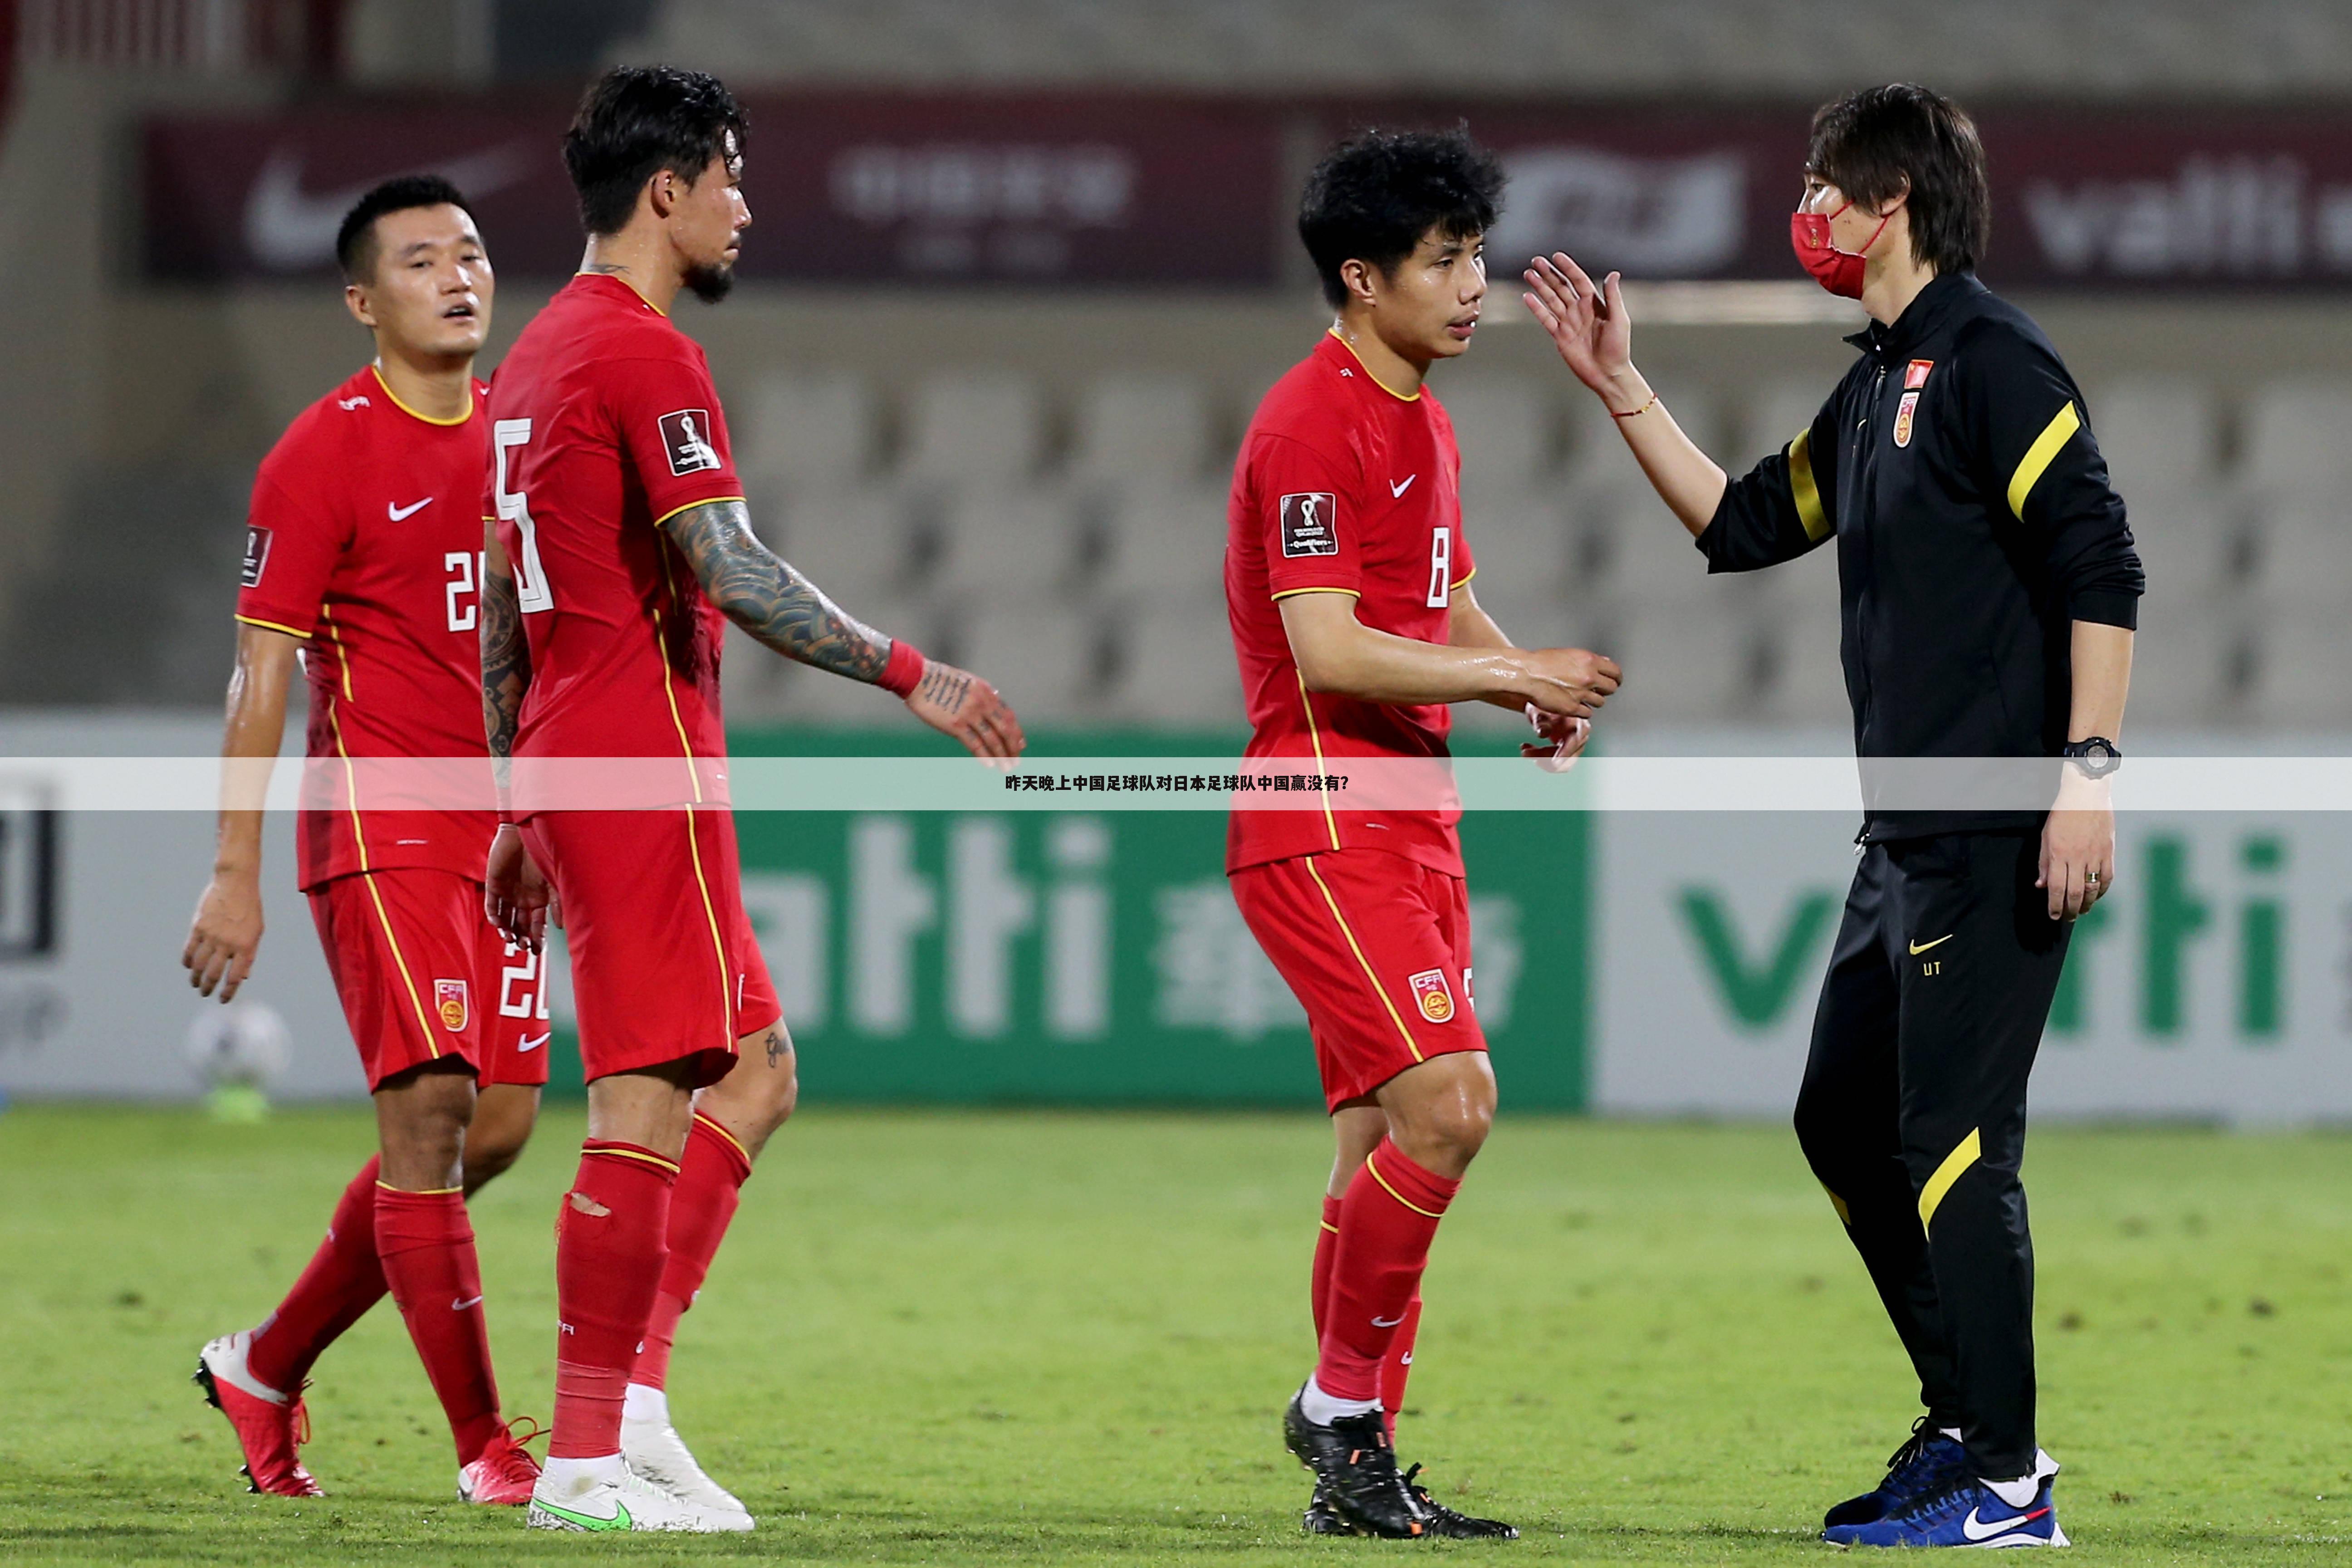 昨天晚上中国足球队对日本足球队中国赢没有？